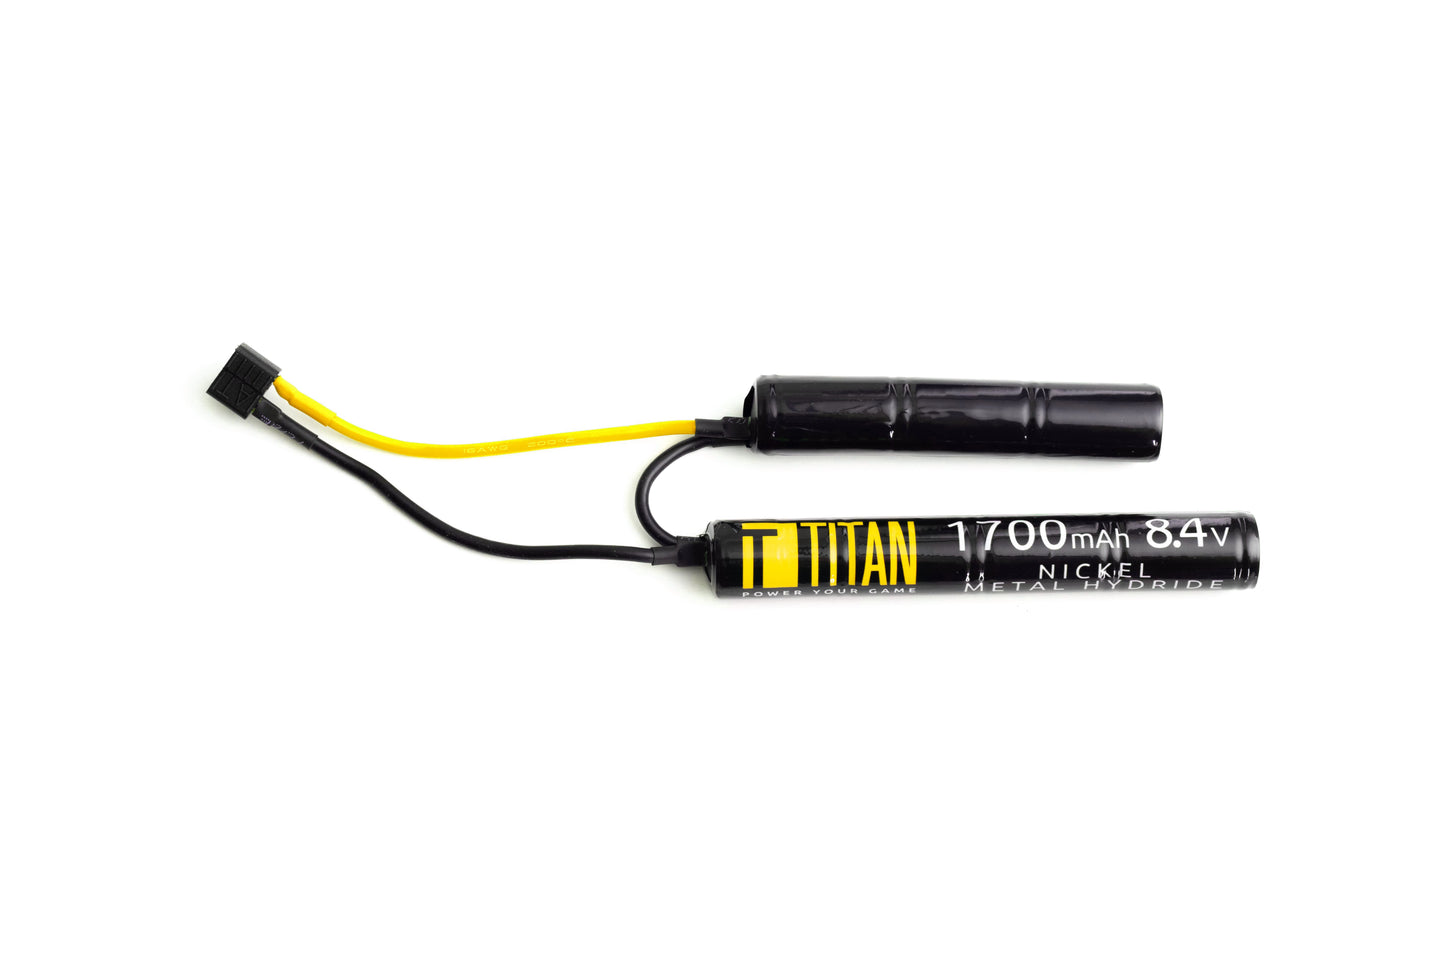 Titan NiMh 1700mAh 8.4v Nunchuck T-Plug (Deans) - Dealer